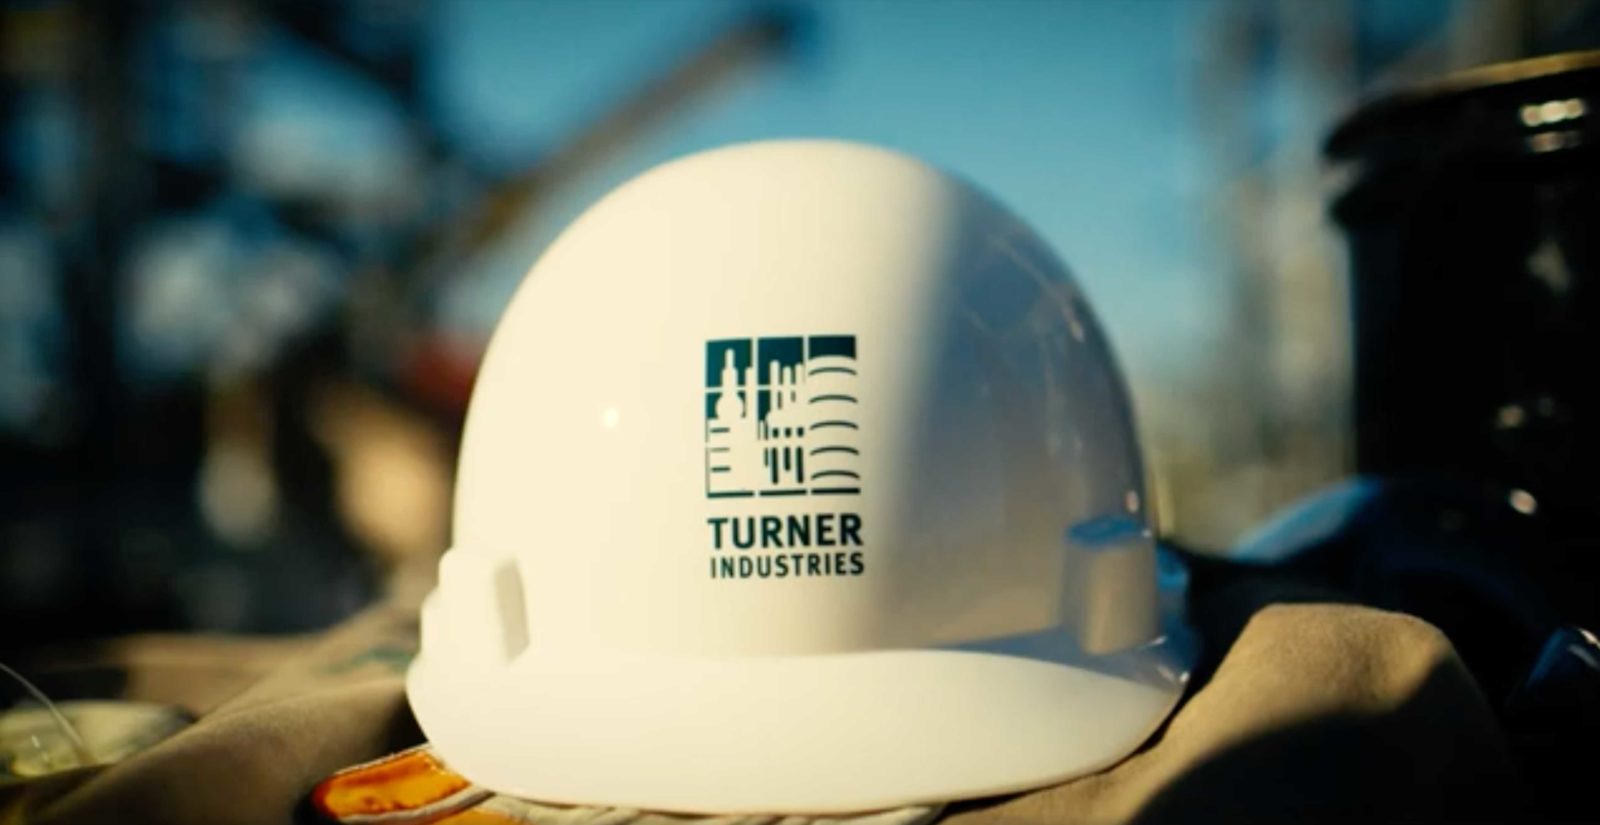 Casque de sécurité Turner Industries.